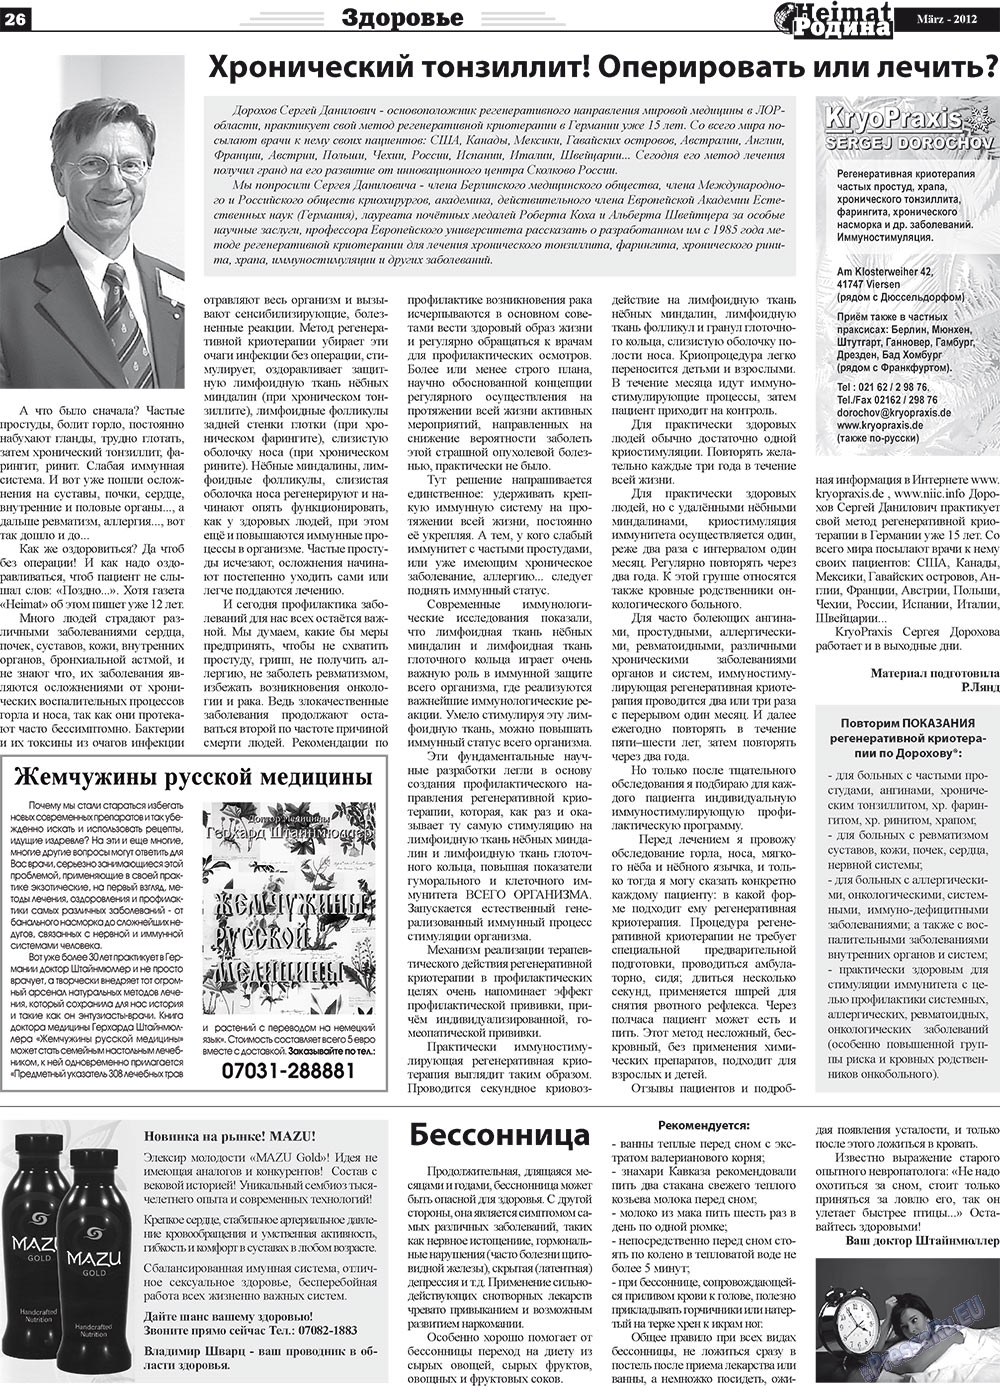 Heimat-Родина (газета). 2012 год, номер 3, стр. 26